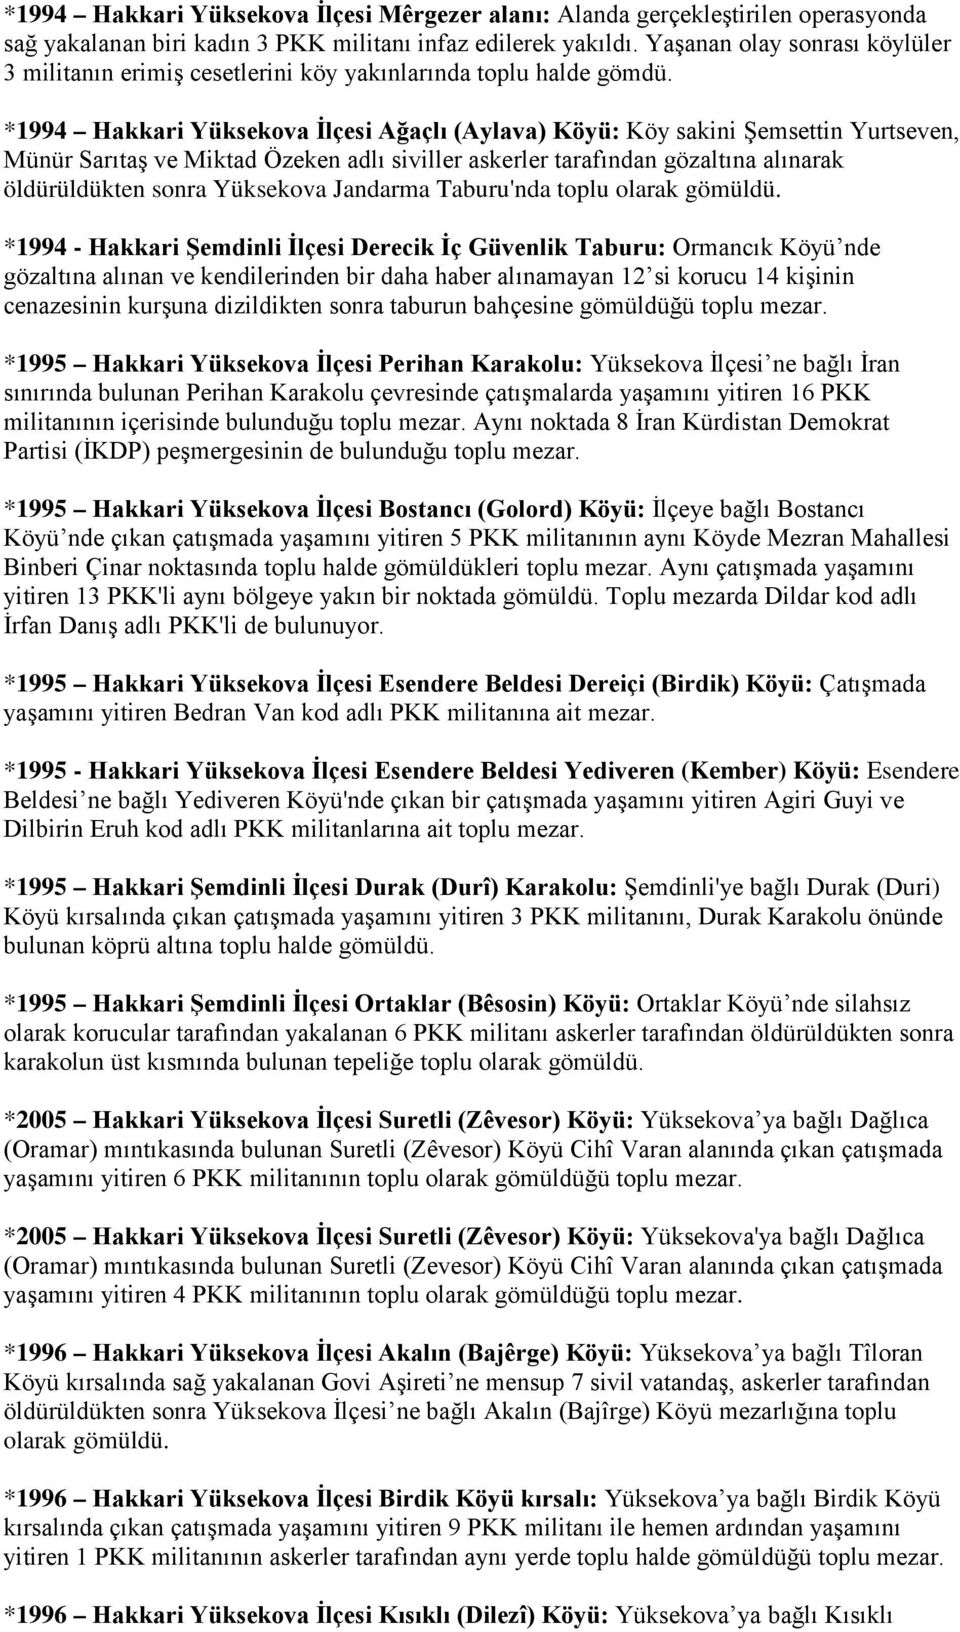 *1994 Hakkari Yüksekova İlçesi Ağaçlı (Aylava) Köyü: Köy sakini Şemsettin Yurtseven, Münür Sarıtaş ve Miktad Özeken adlı siviller askerler tarafından gözaltına alınarak öldürüldükten sonra Yüksekova